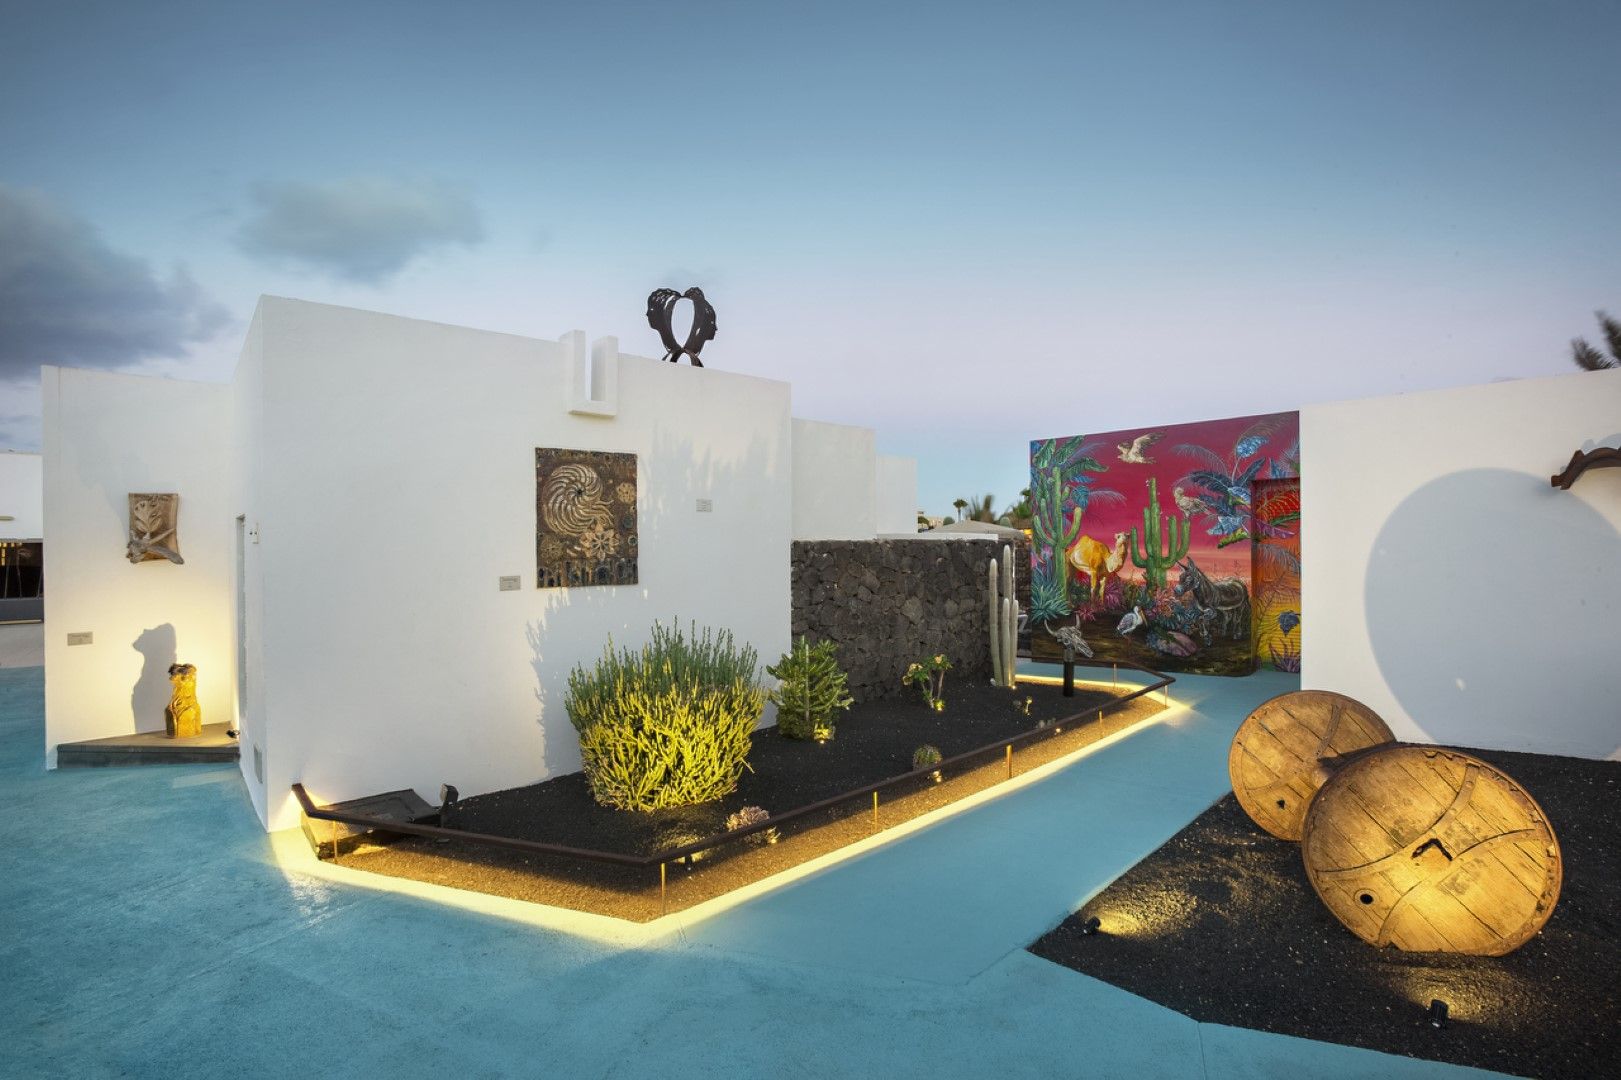 Jardines de la residencia artística de Nautilus Lanzarote en Puerto del Carmen. Foto: Nautilus Lanzarote